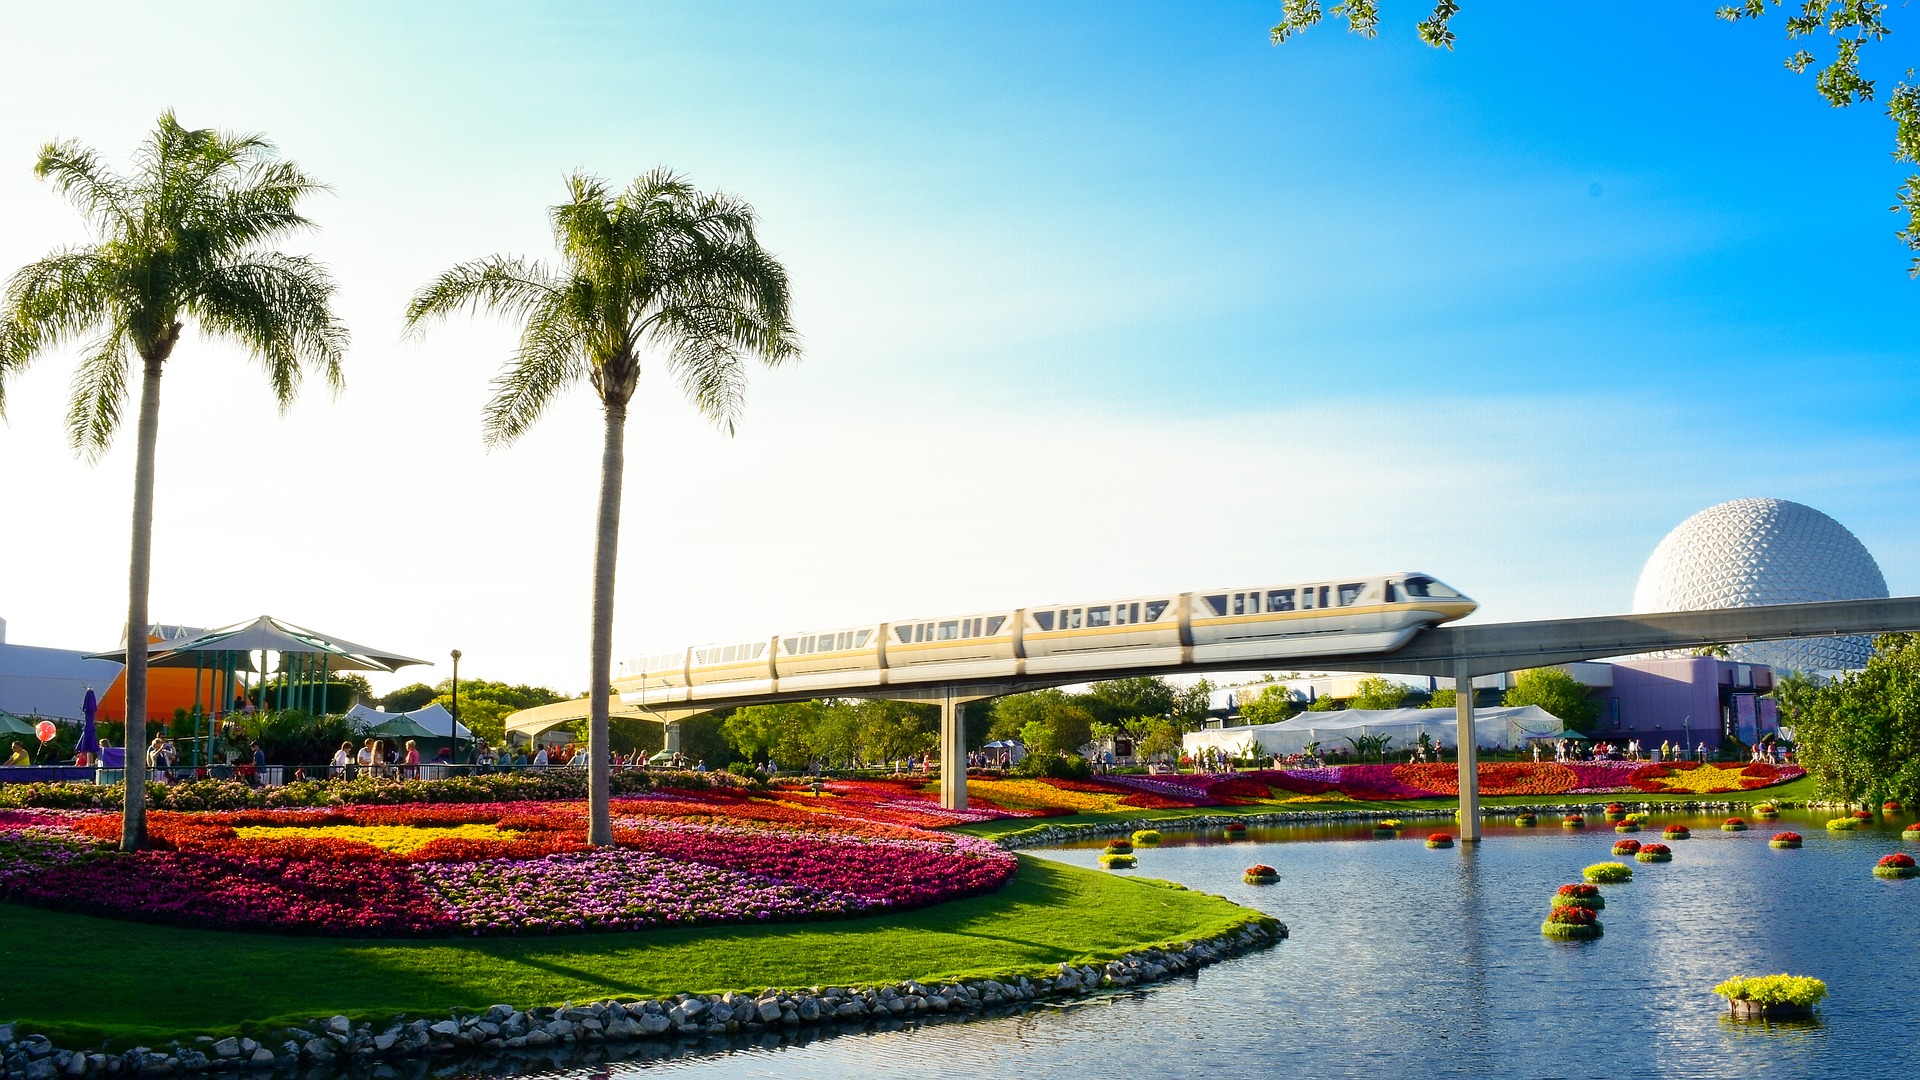 Monorail corta a paisagem de Walt Disney World Resort, em Orlando